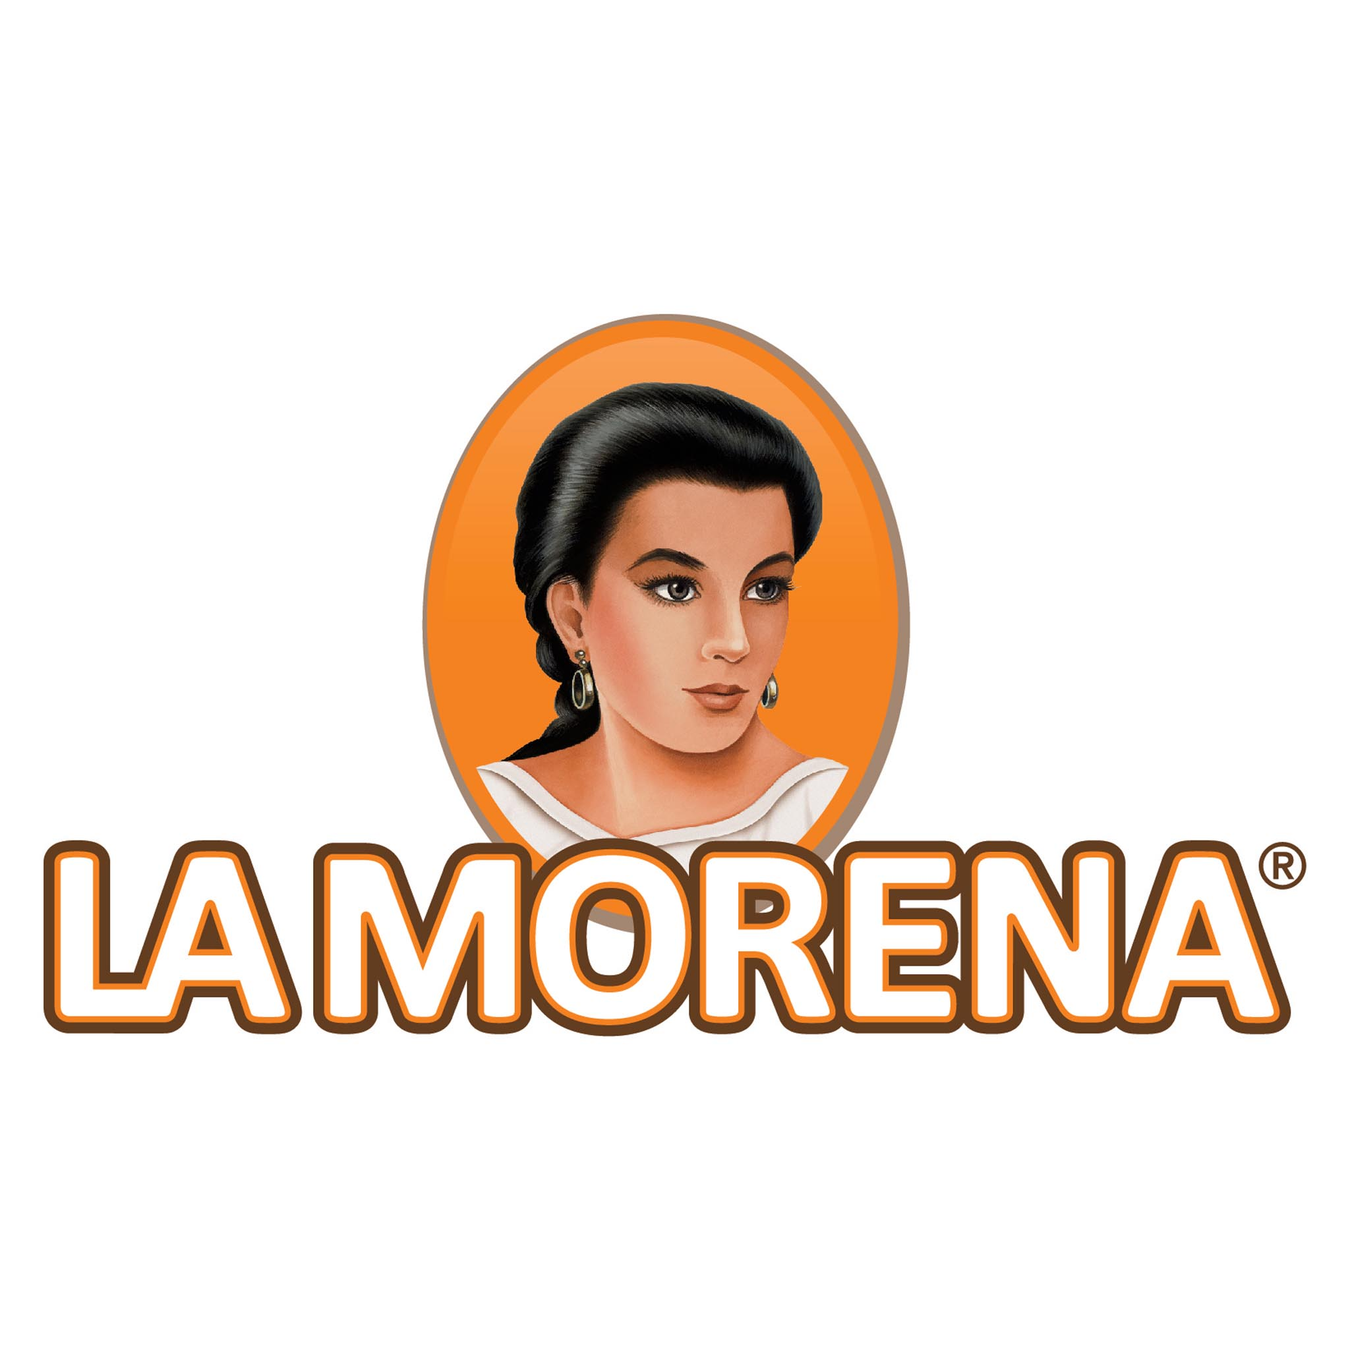 La Morena Gear - Apparel, Home Decor, and more